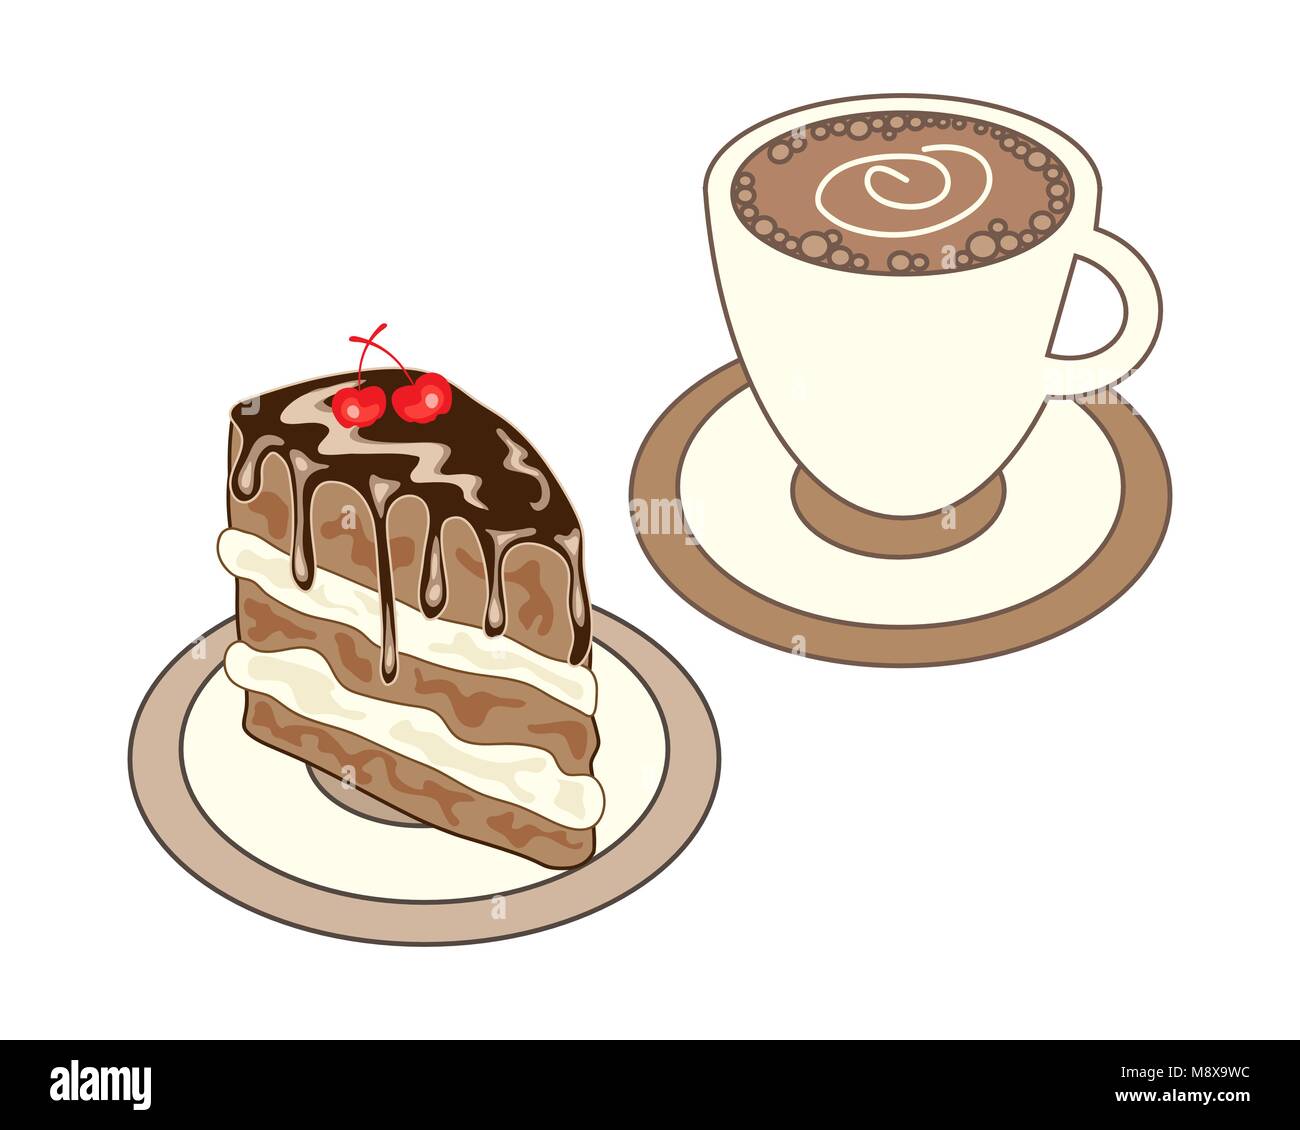 Un vecteur illustration au format eps de l'heure du lunch snack-y compris une tasse de café et une tranche de gâteau au chocolat gluant sur fond blanc Illustration de Vecteur